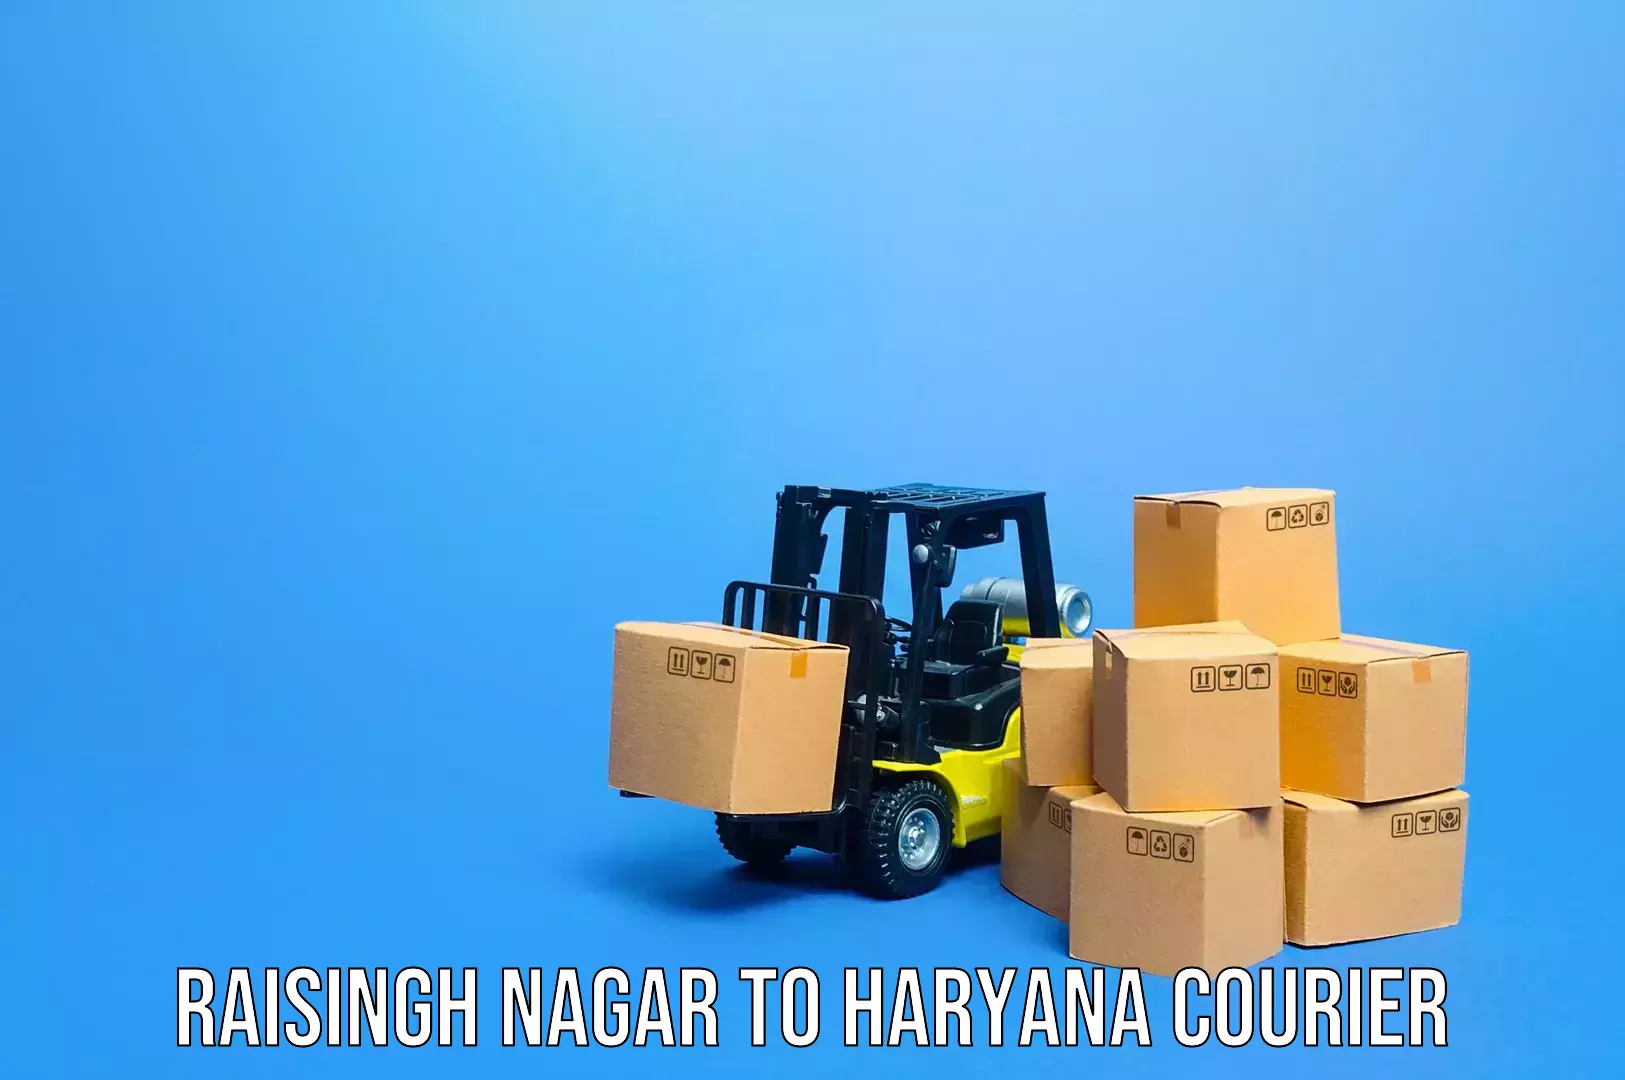 Baggage transport professionals Raisingh Nagar to Dharuhera